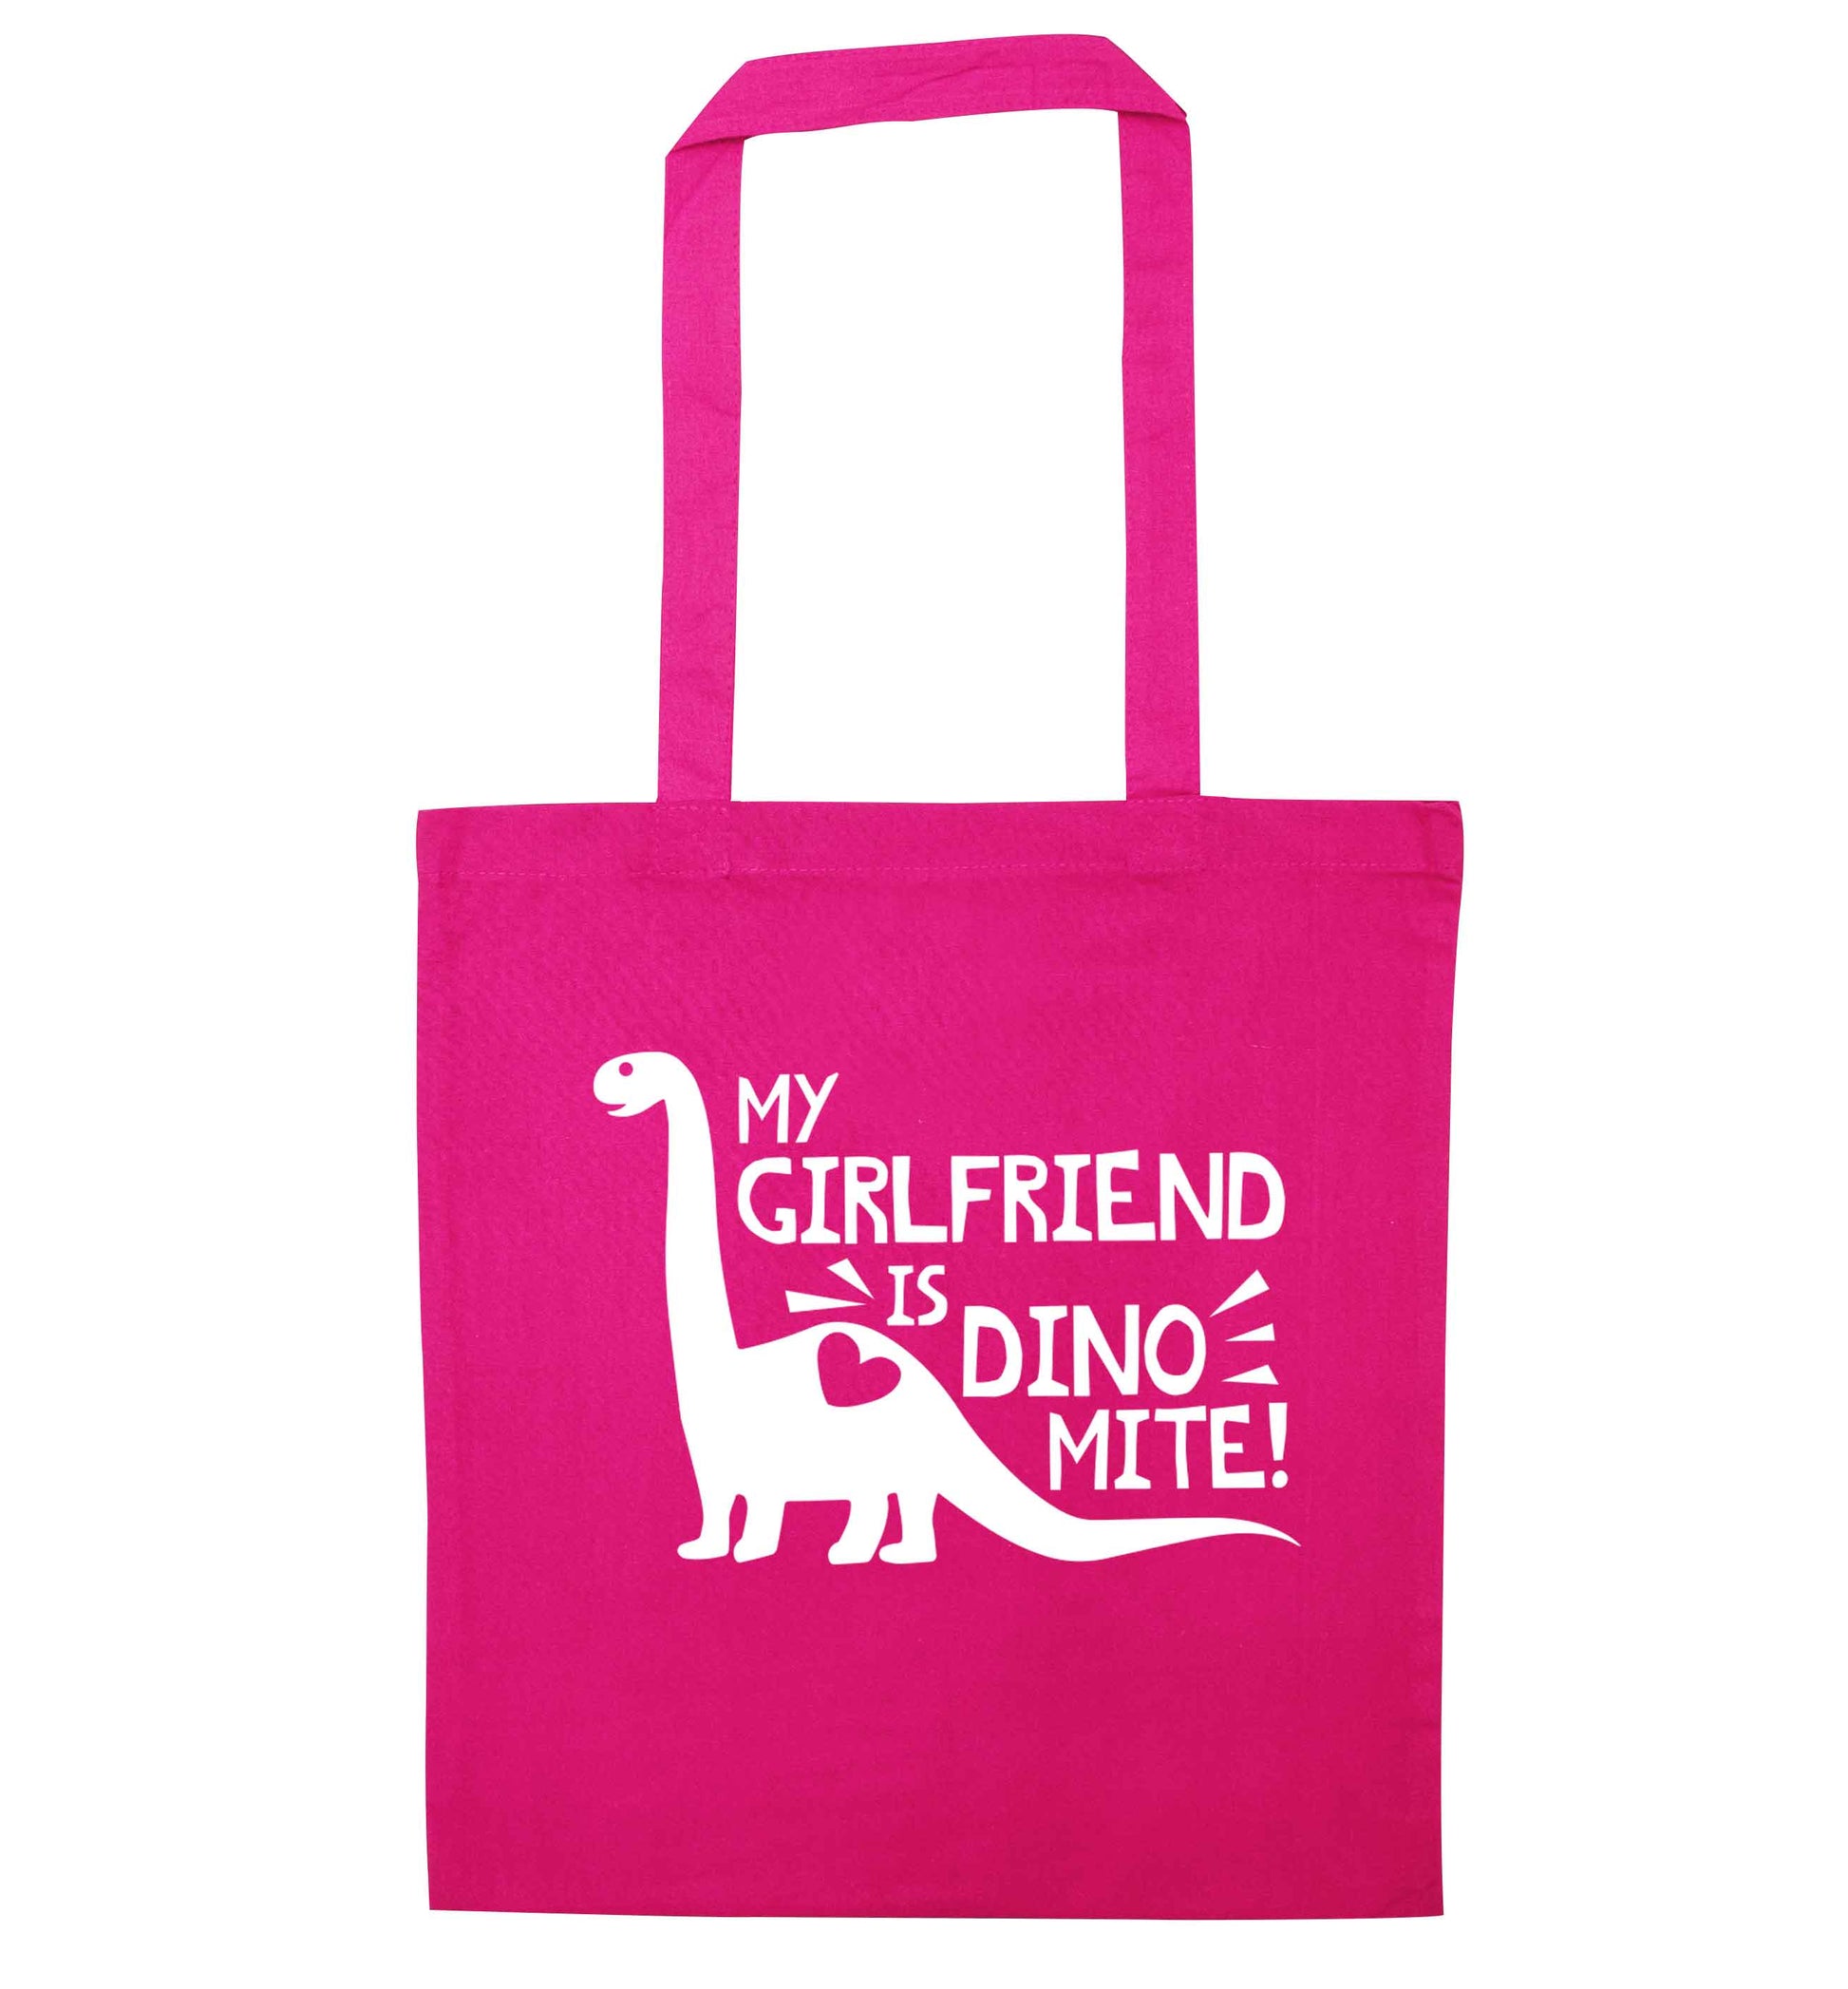 My girlfriend is dinomite! pink tote bag